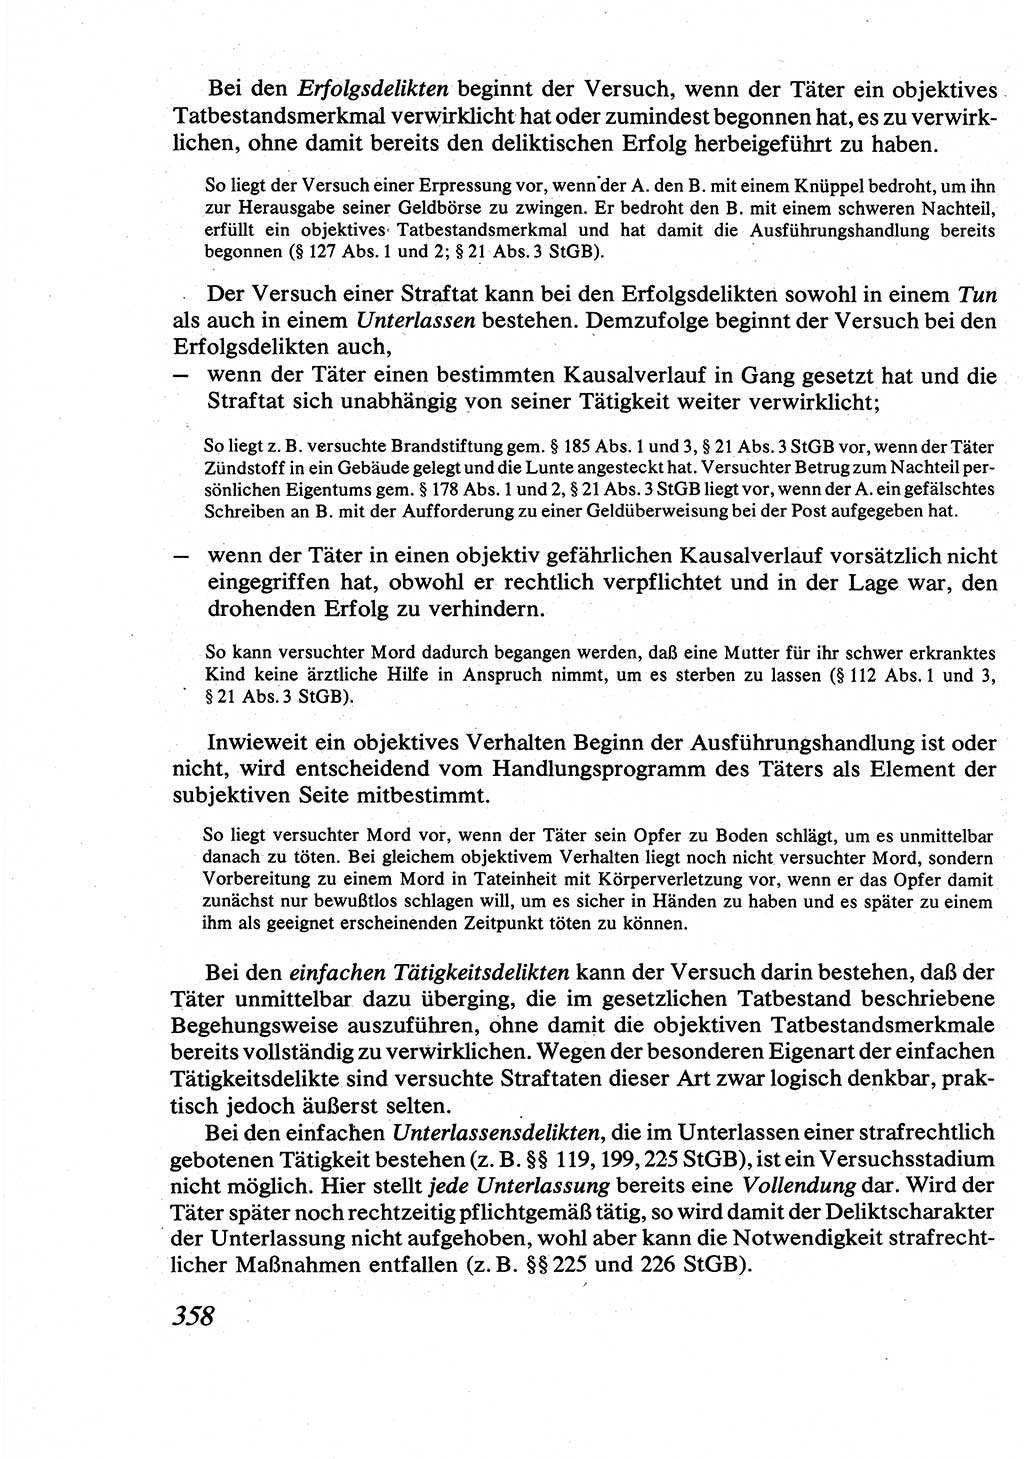 Strafrecht [Deutsche Demokratische Republik (DDR)], Allgemeiner Teil, Lehrbuch 1976, Seite 358 (Strafr. DDR AT Lb. 1976, S. 358)